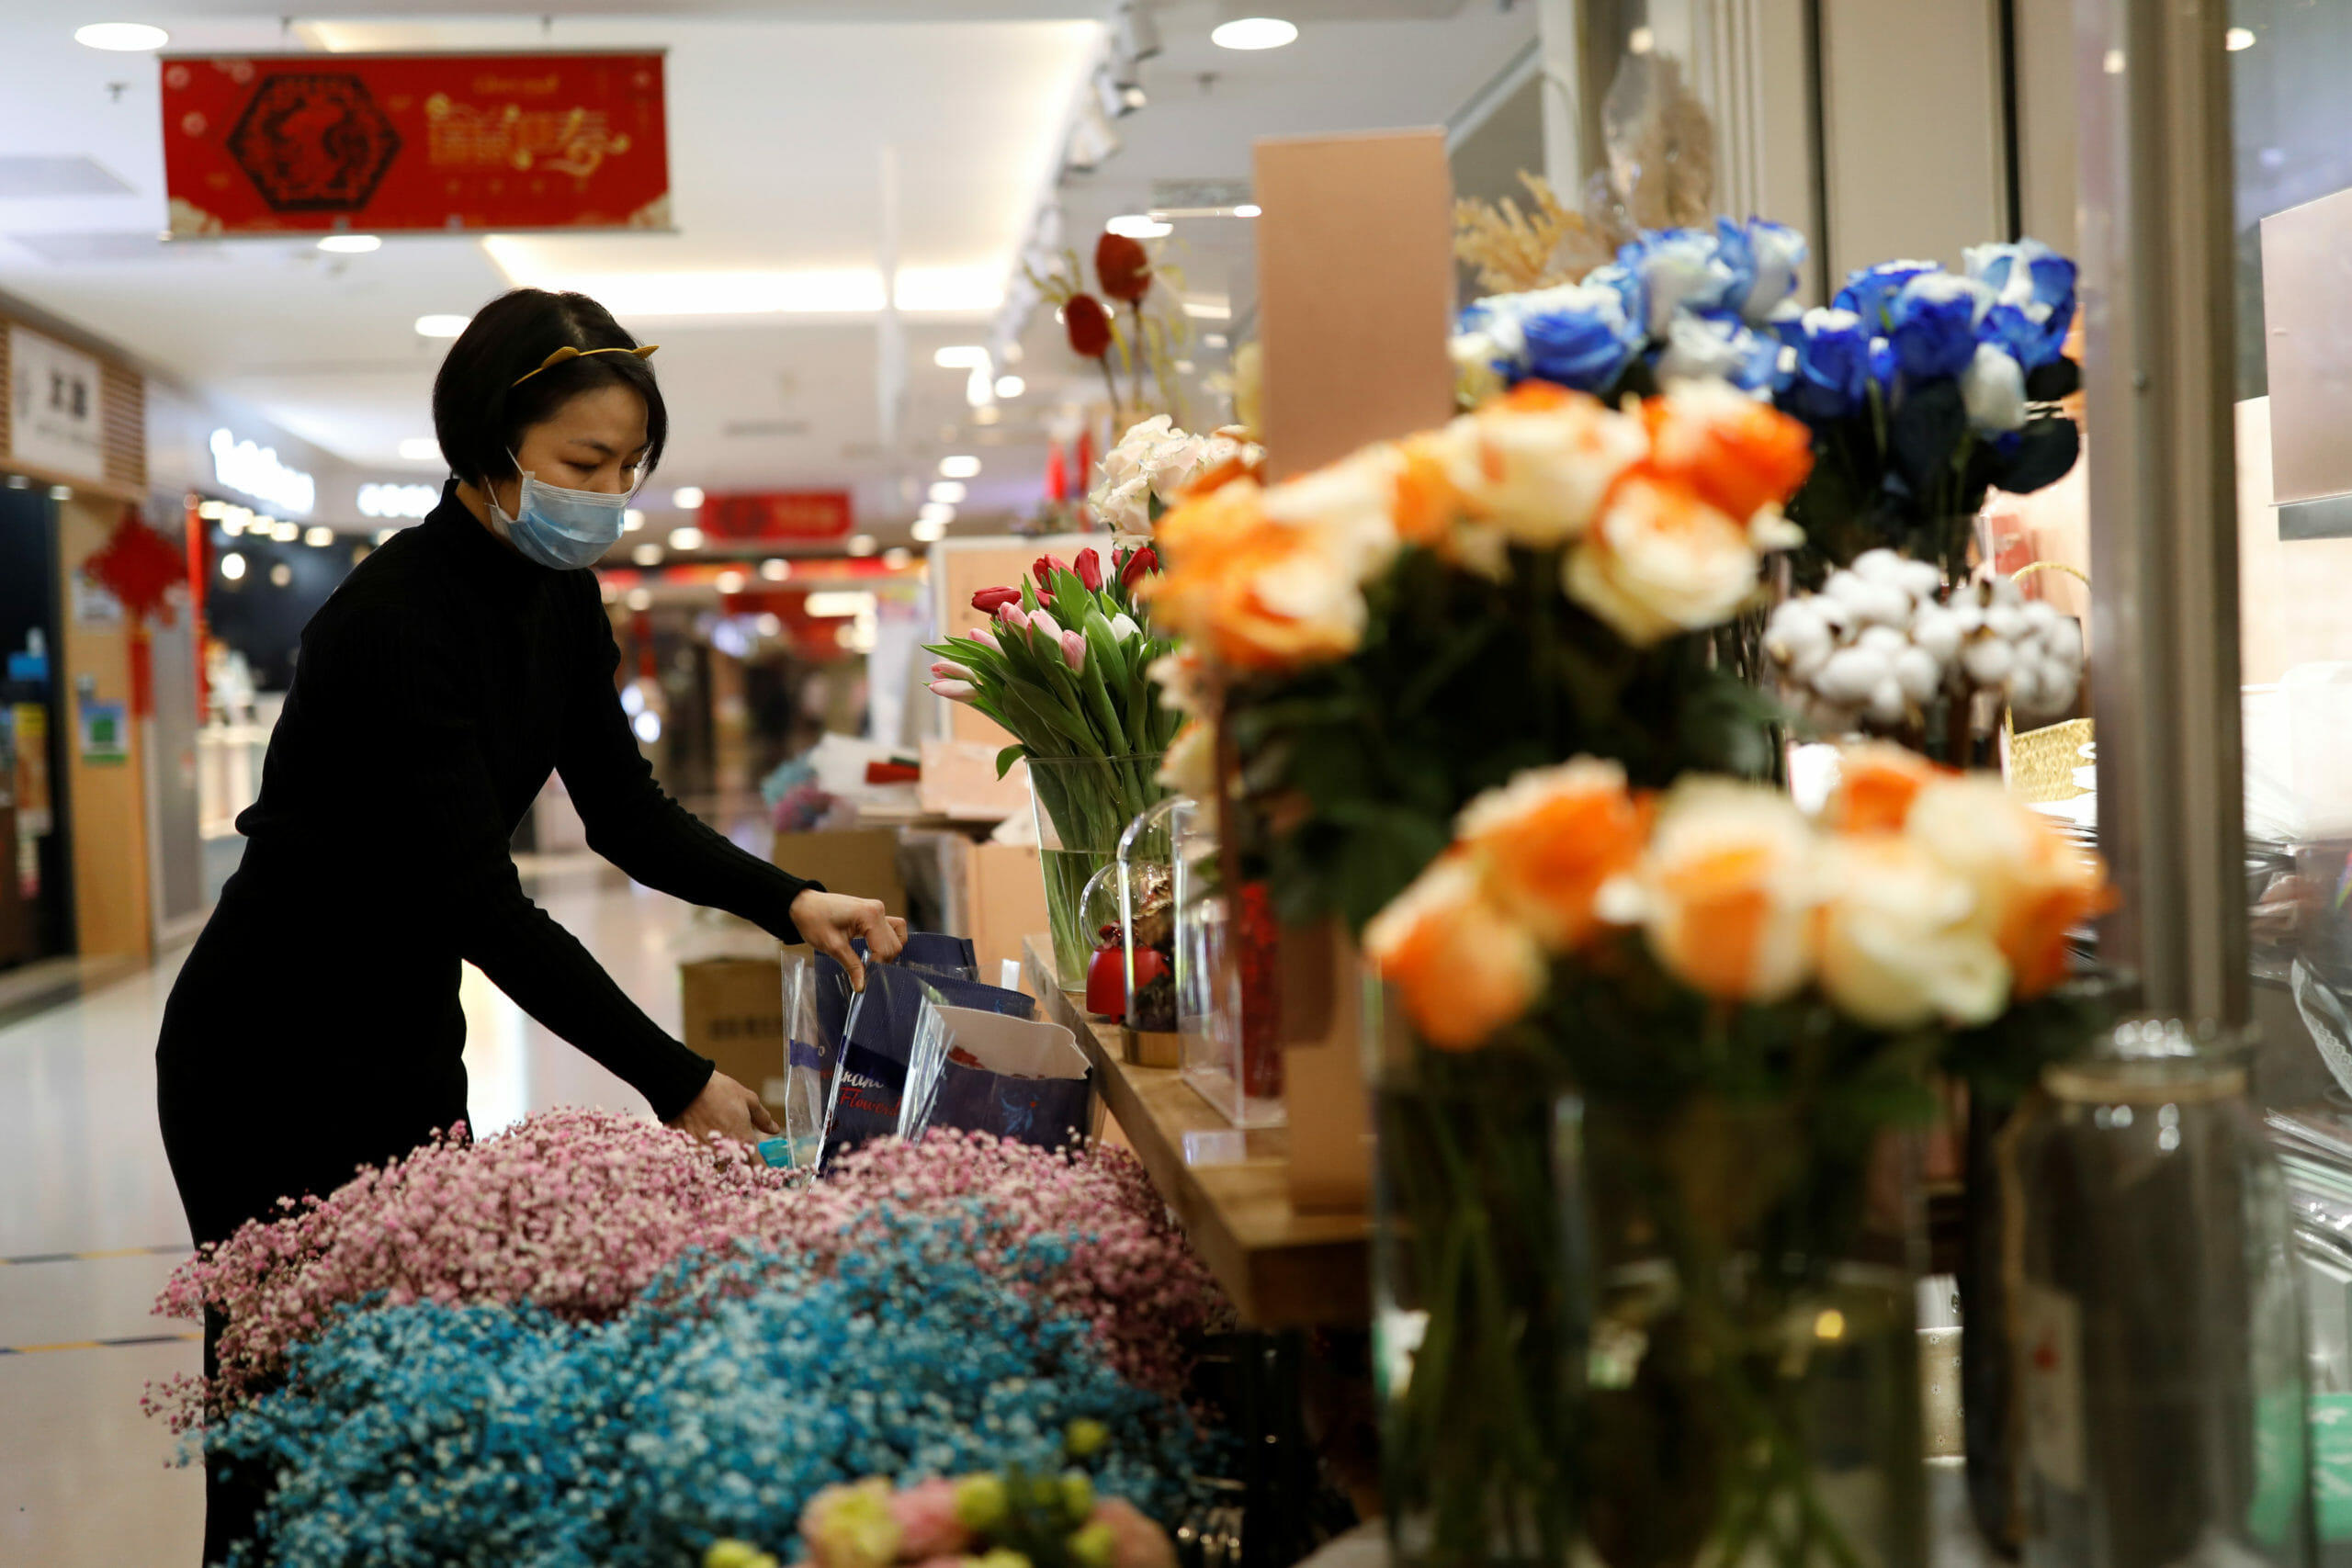 Κοροναϊός: Ανθοπωλείο στέλνει μαζί με τα λουλούδια δώρο… ένα μπουκαλάκι με απολυμαντικό